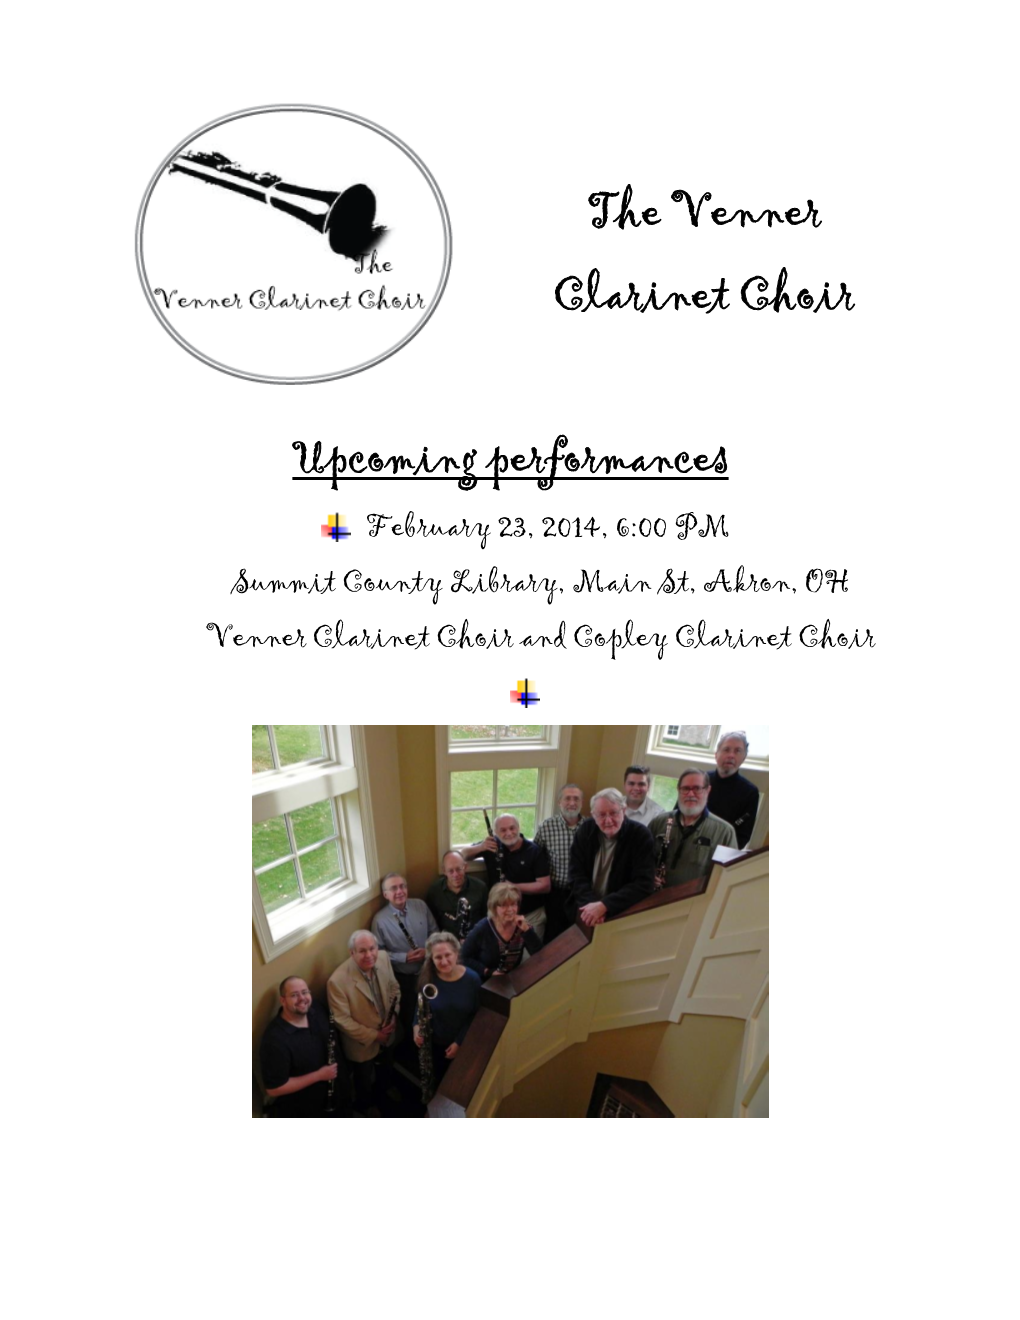 The Venner Clarinet Choir